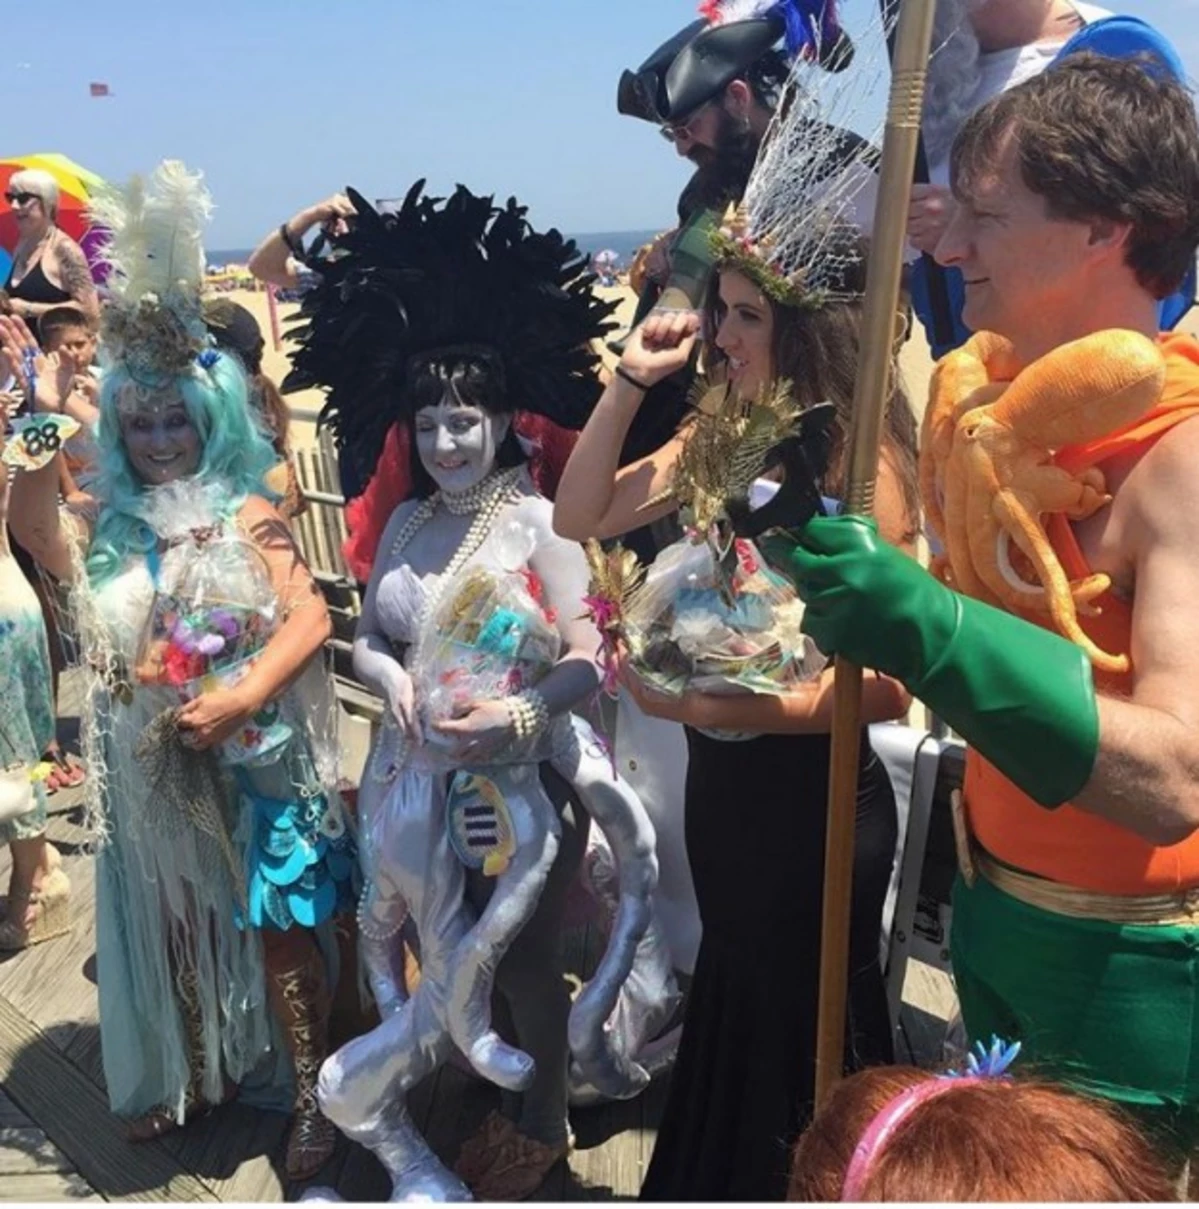 Mermaid Parade Coming to Asbury